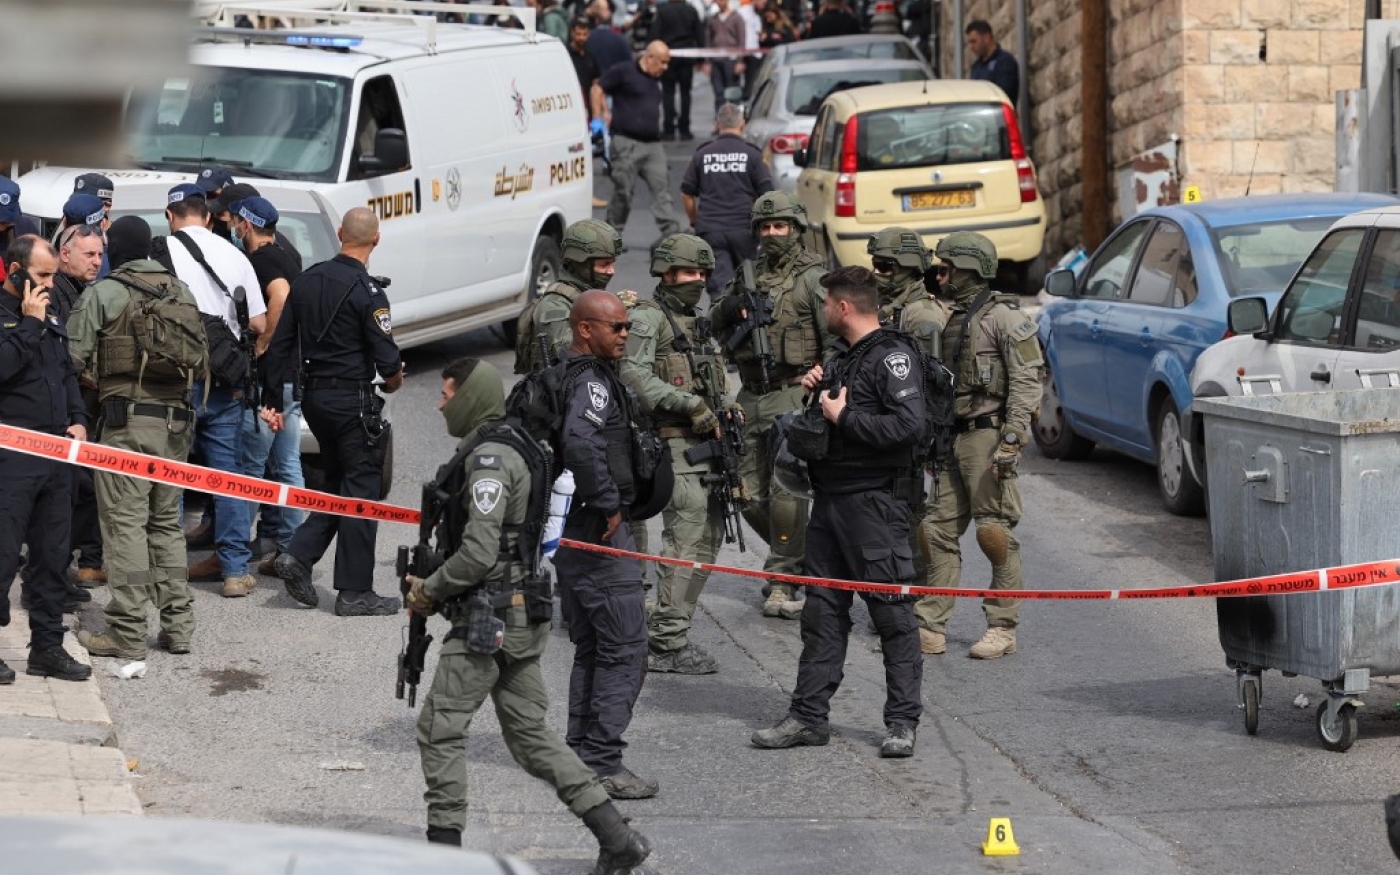 Les forces de sécurité israéliennes et le personnel des services d’urgence se rassemblent dans une zone bouclée du quartier de Silwan à Jérusalem, où un assaillant de 13 ans a blessé deux personnes, le 28 janvier 2023. (AFP/Ahmad Gharabli)